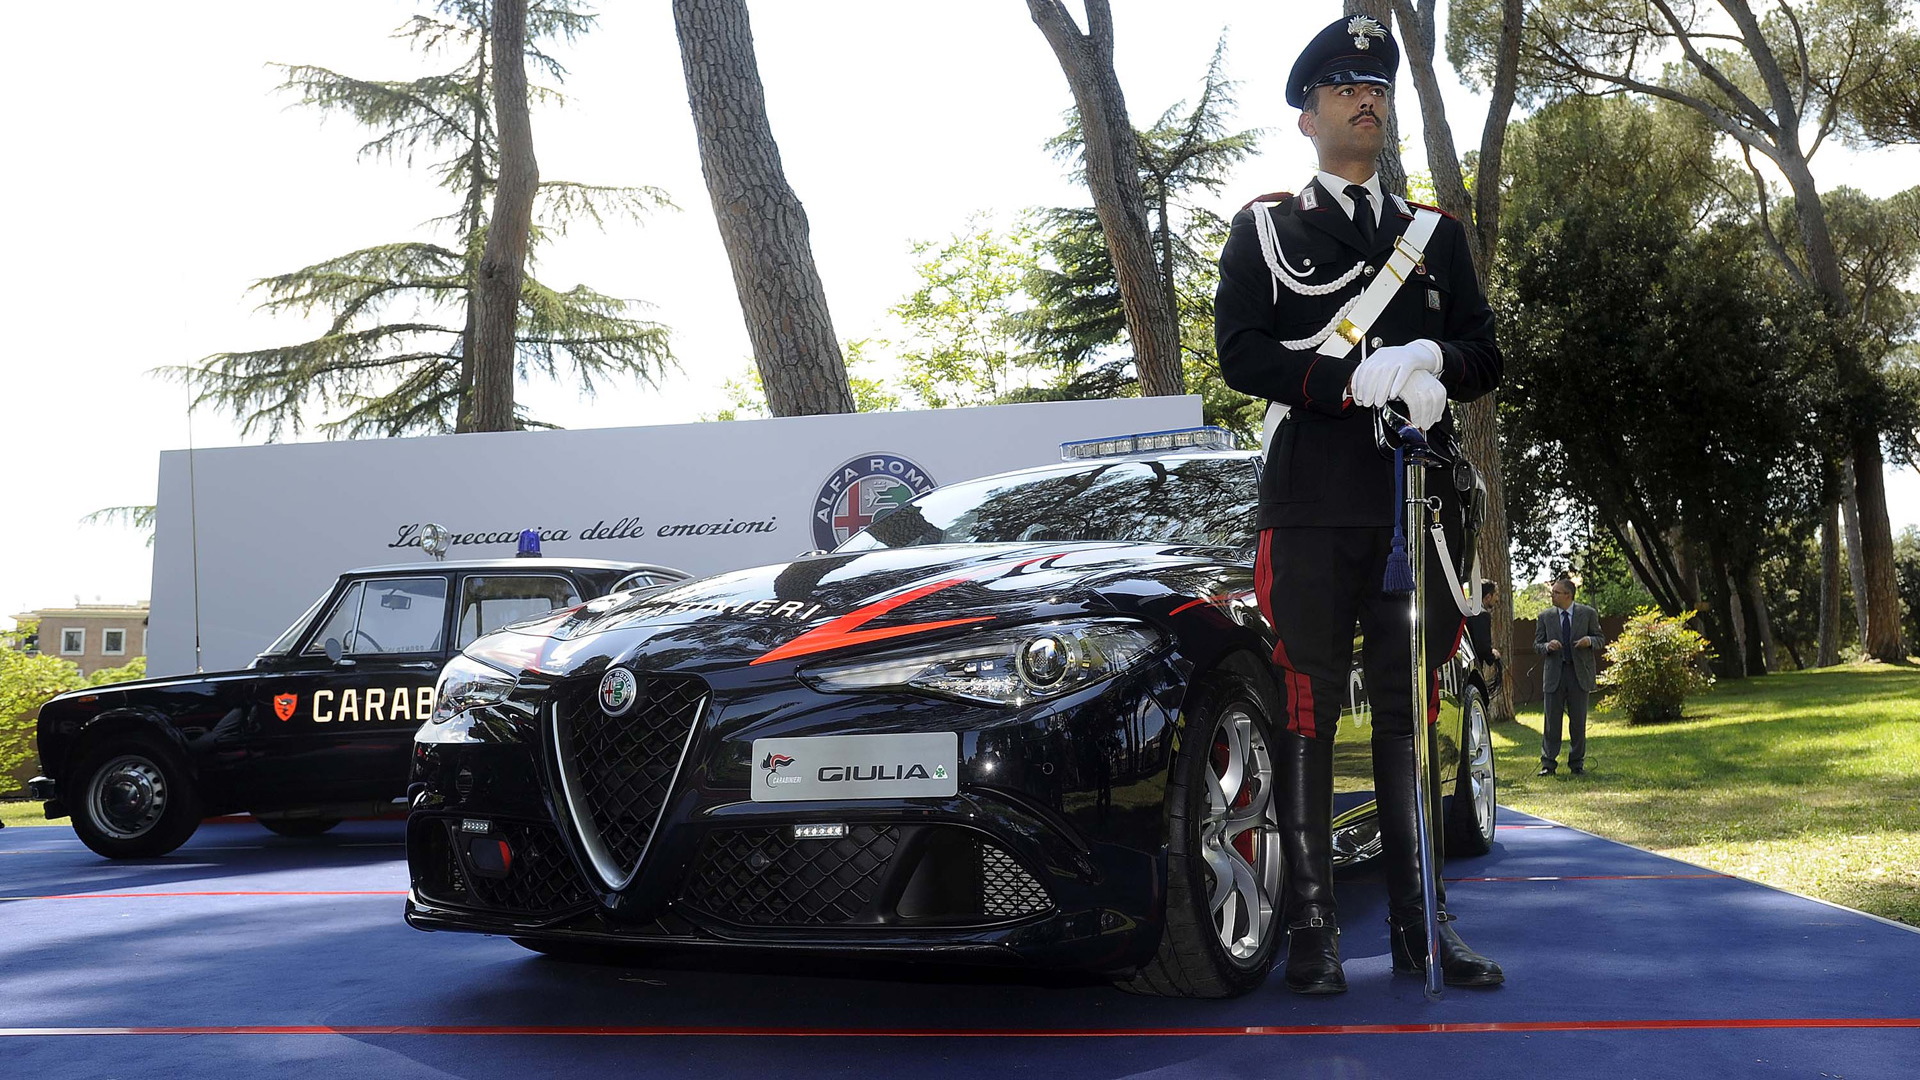 2017 Alfa Romeo Giulia Quadrifoglio delivered to Italy’s Carabinieri police